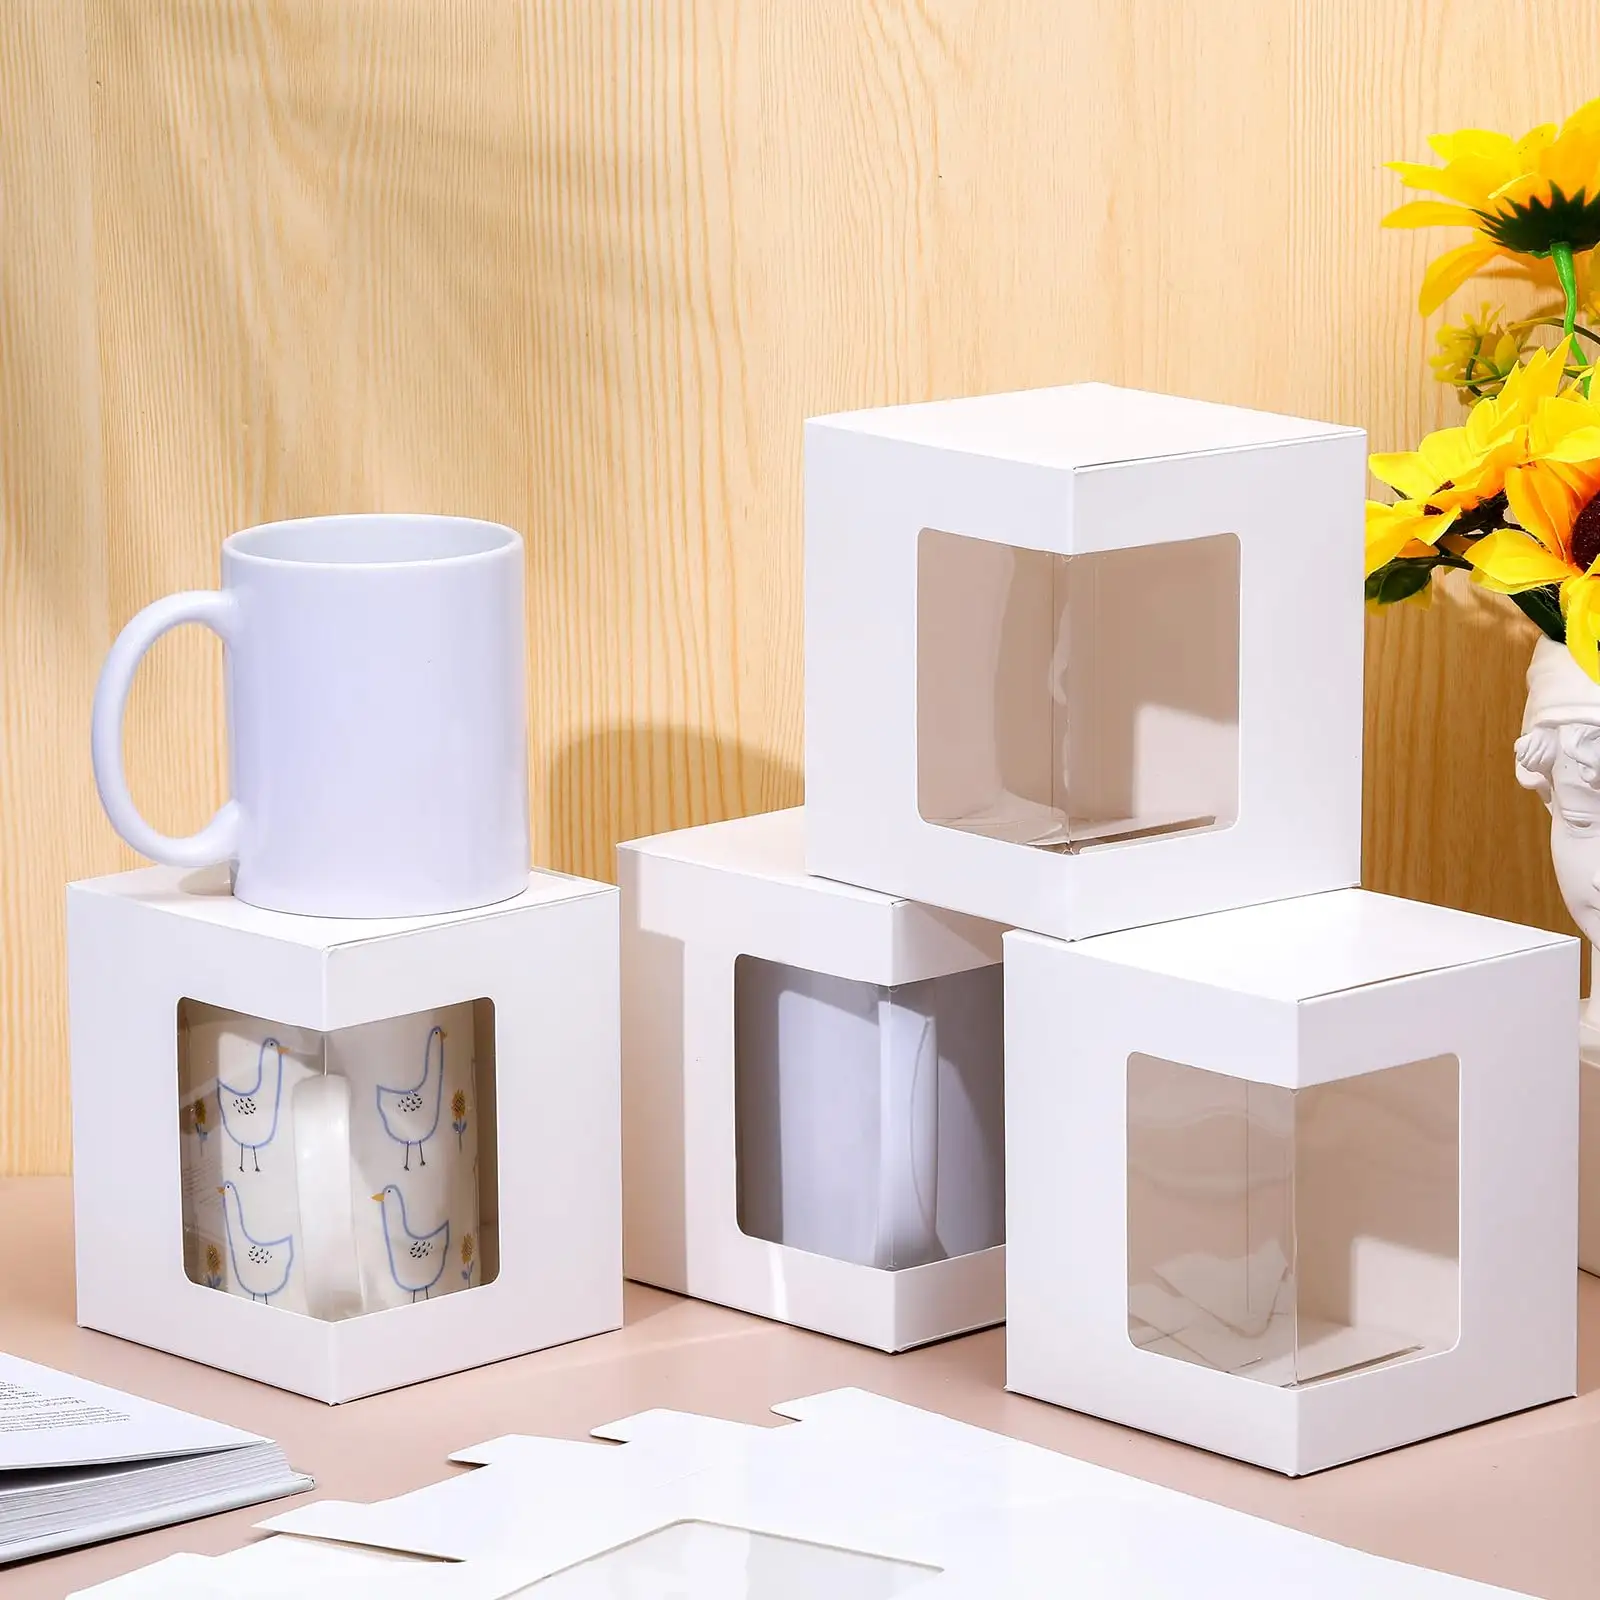 Suministro de fábrica Logotipo personalizado de marca Plegable Taza de café blanca Taza Embalaje Regalo Caja de papel Kraft